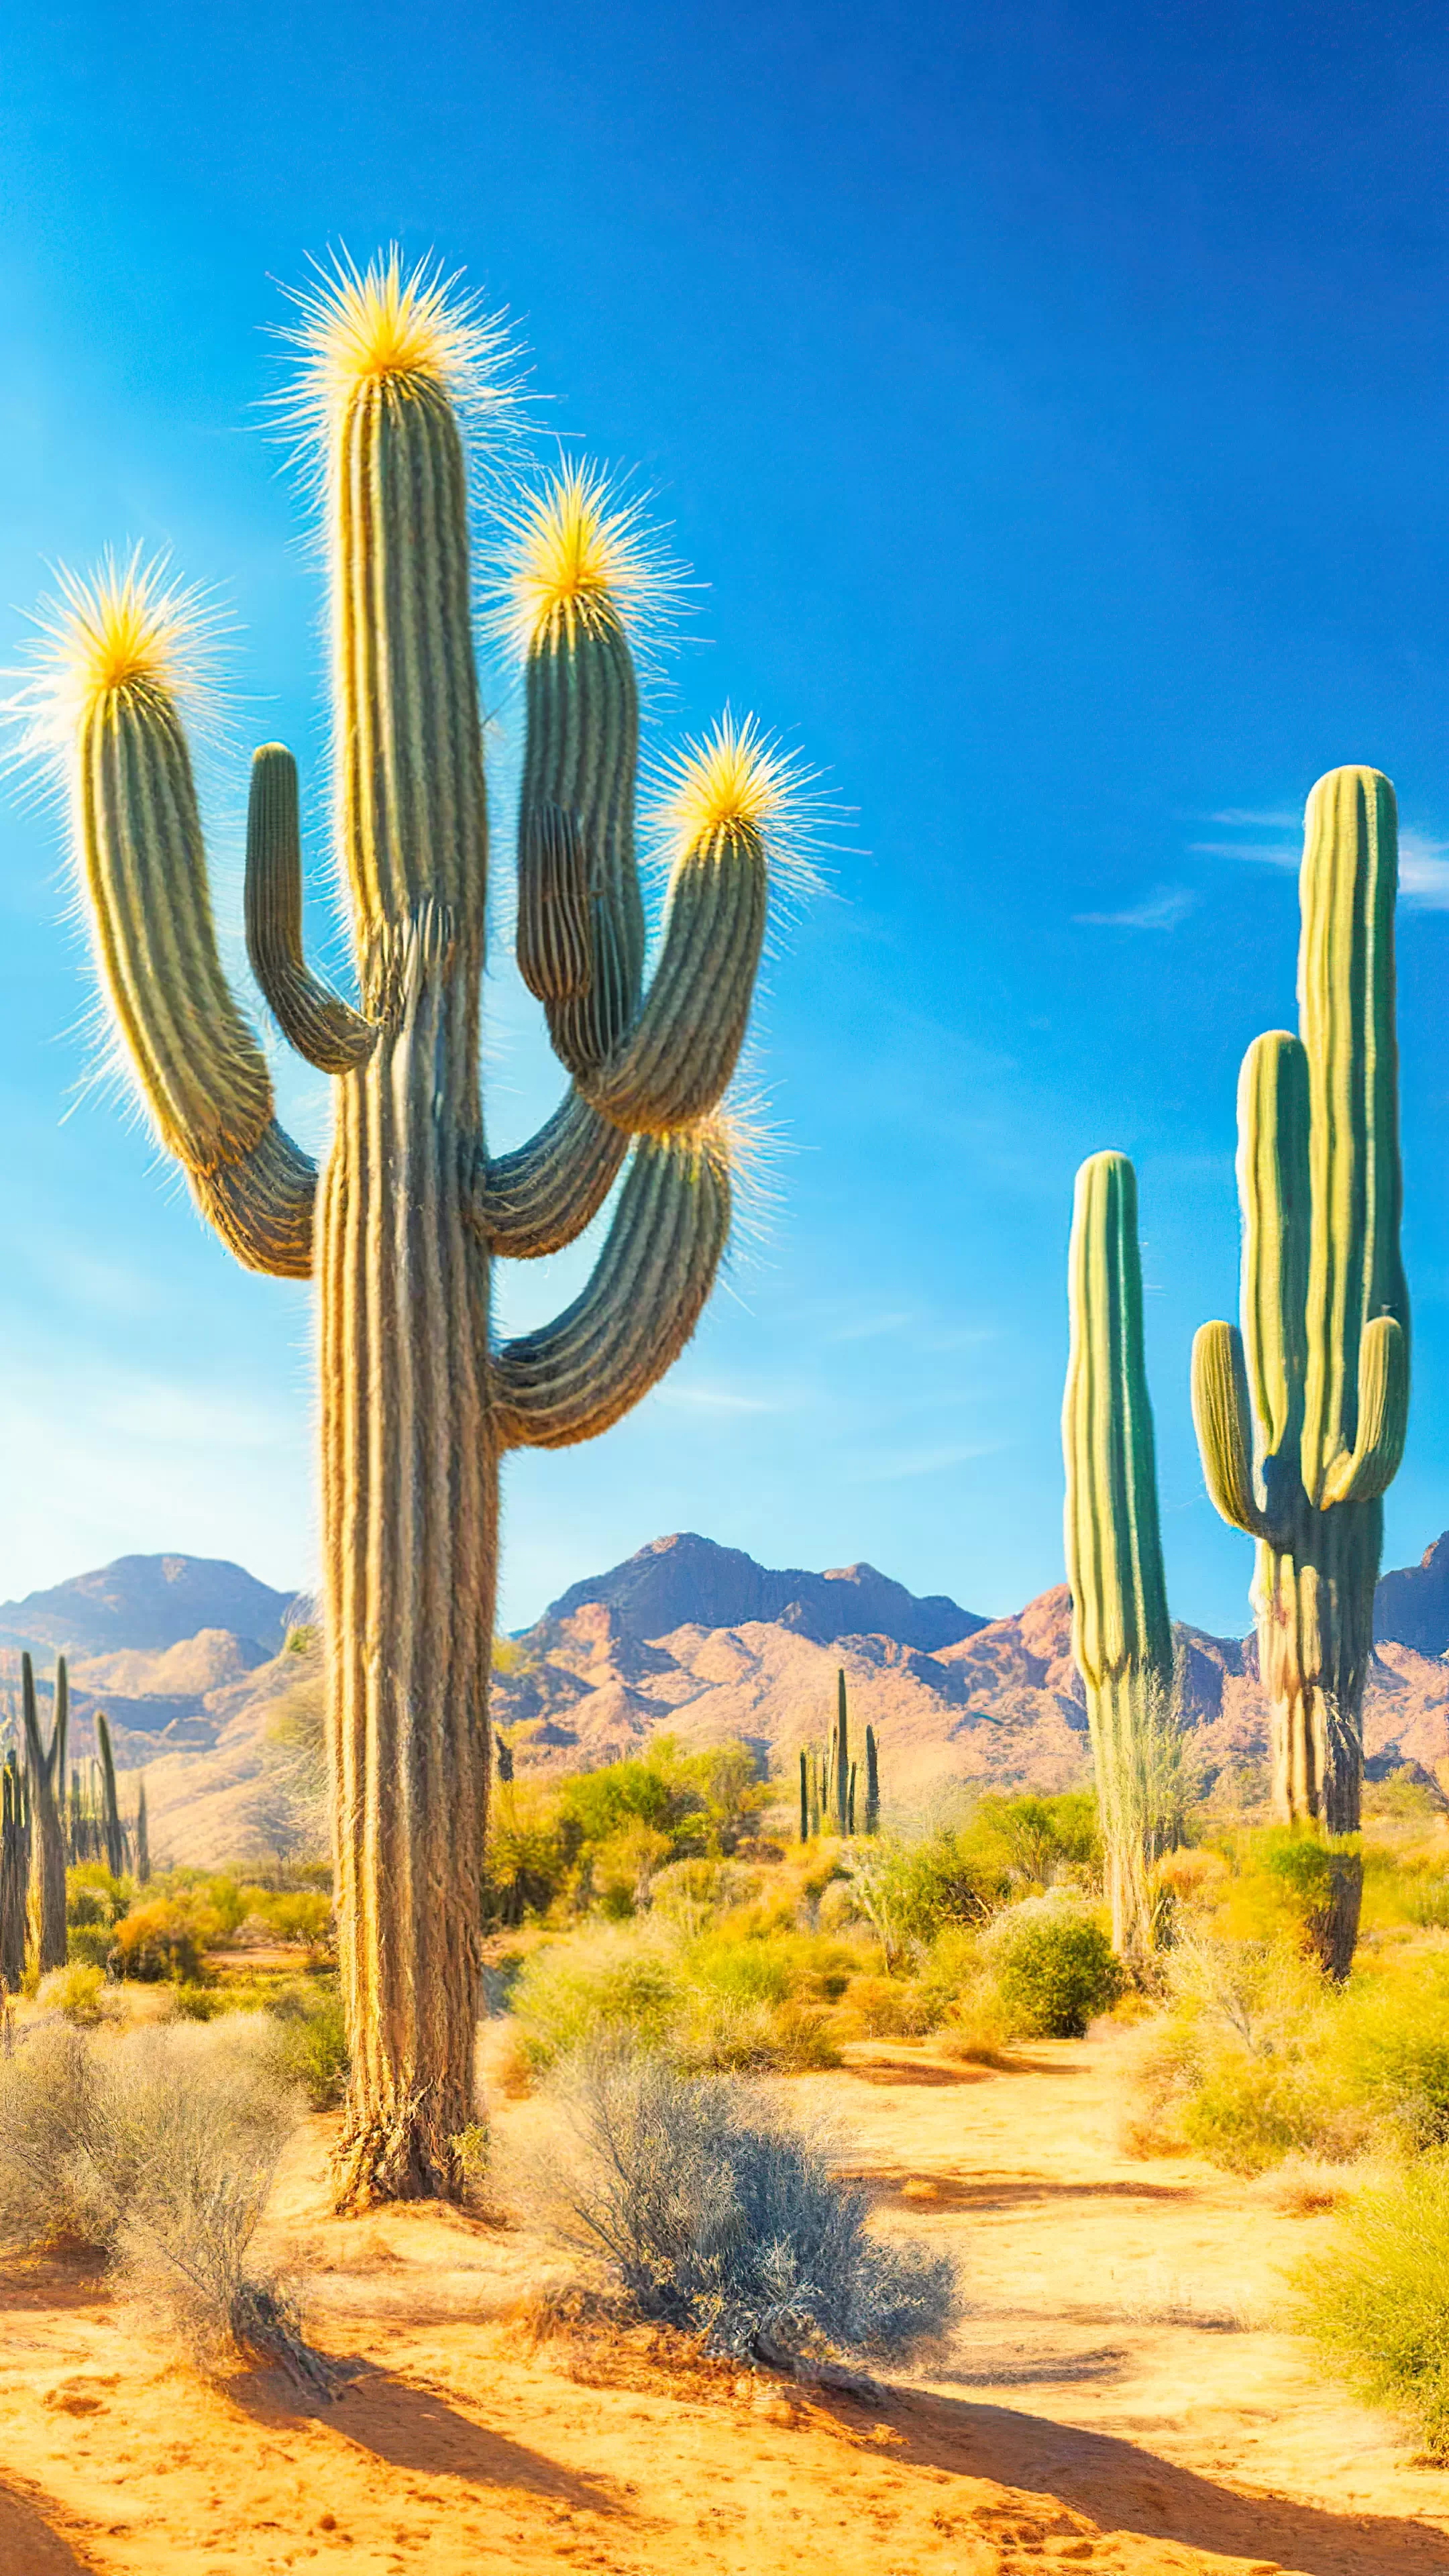 Découvrez l'immensité d'un paysage désertique parsemé de cactus saguaro sous des cieux bleus avec notre fond d'écran nature en 1080p, et laissez votre appareil devenir un portail vers la beauté robuste de la nature sauvage.